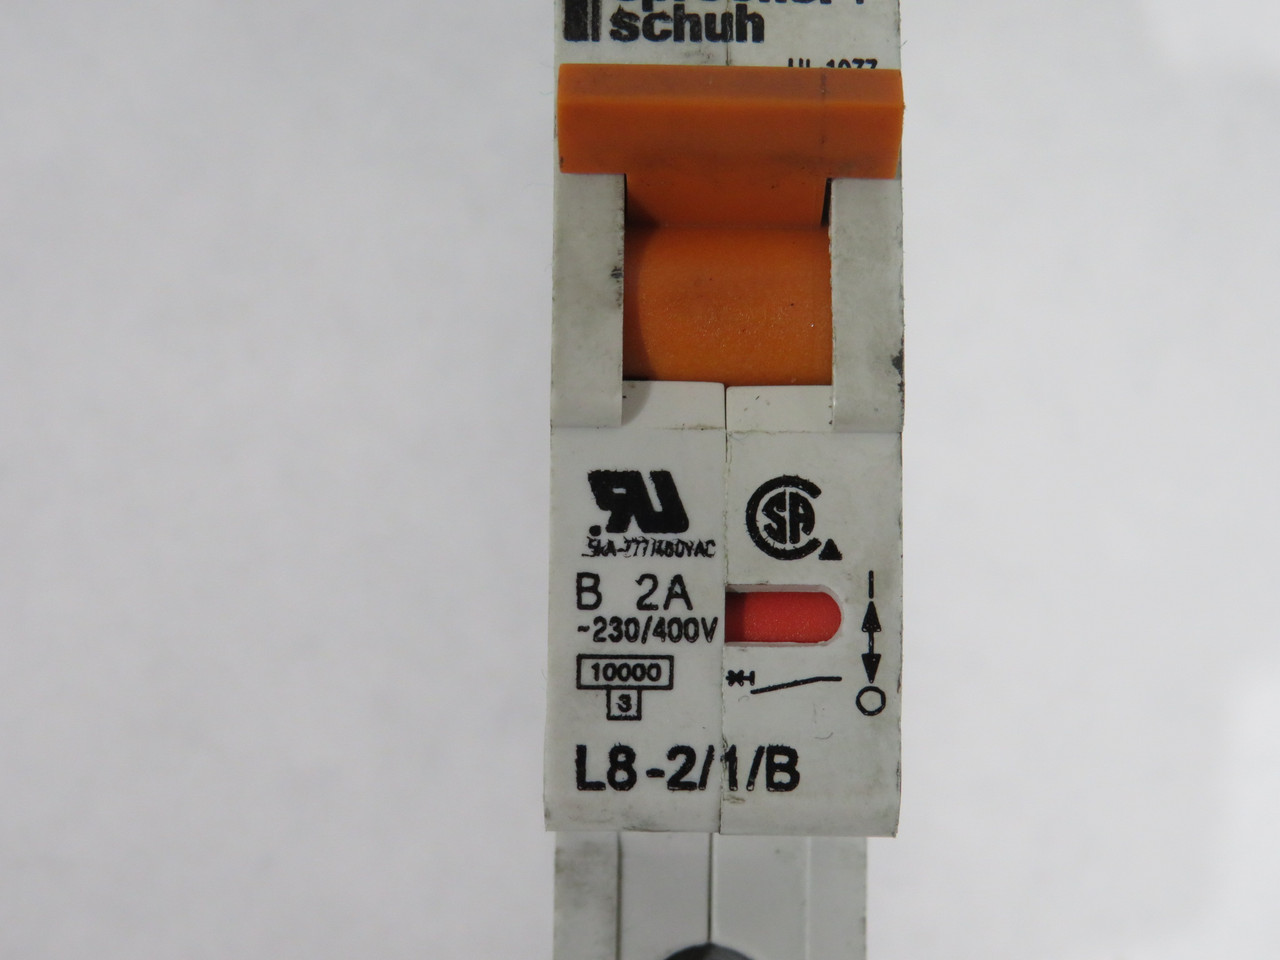 Sprecher + Schuh L8-2/1/B Circuit Breaker 2A 230/400V 1P USED